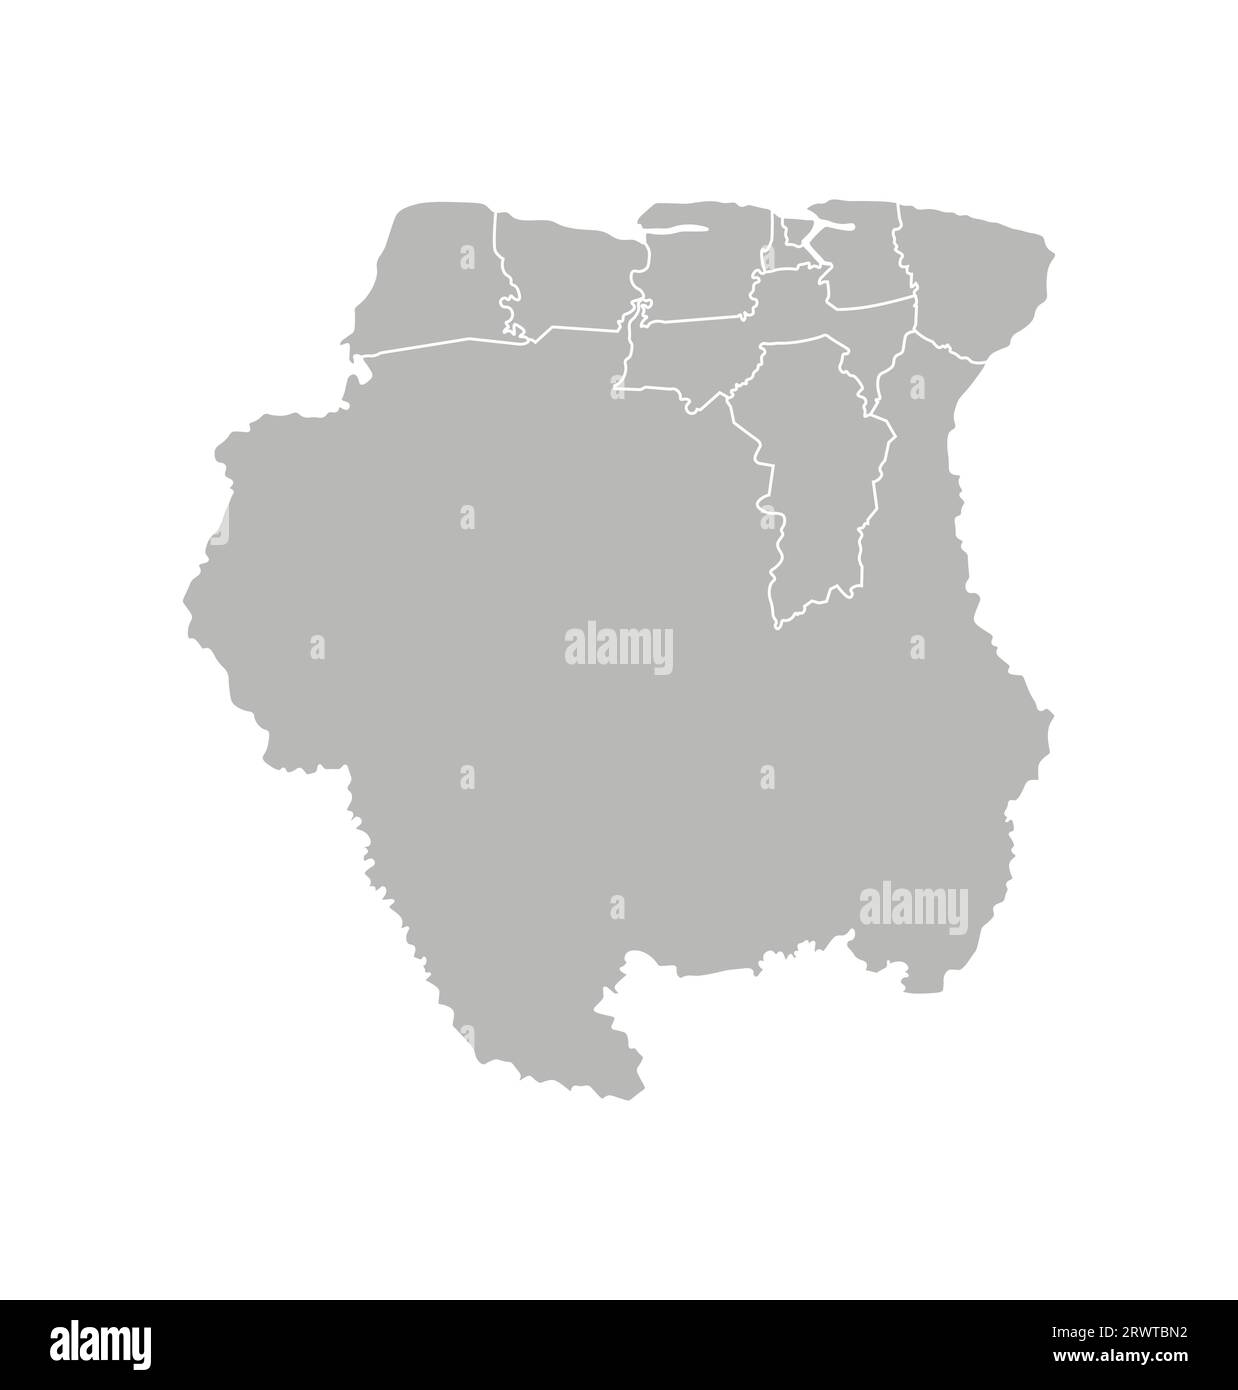 Vektorisolierte Darstellung einer vereinfachten Verwaltungskarte von Suriname. Grenzen der Bezirke (Regionen). Graue Silhouetten. Weiße Umrandung. Stock Vektor